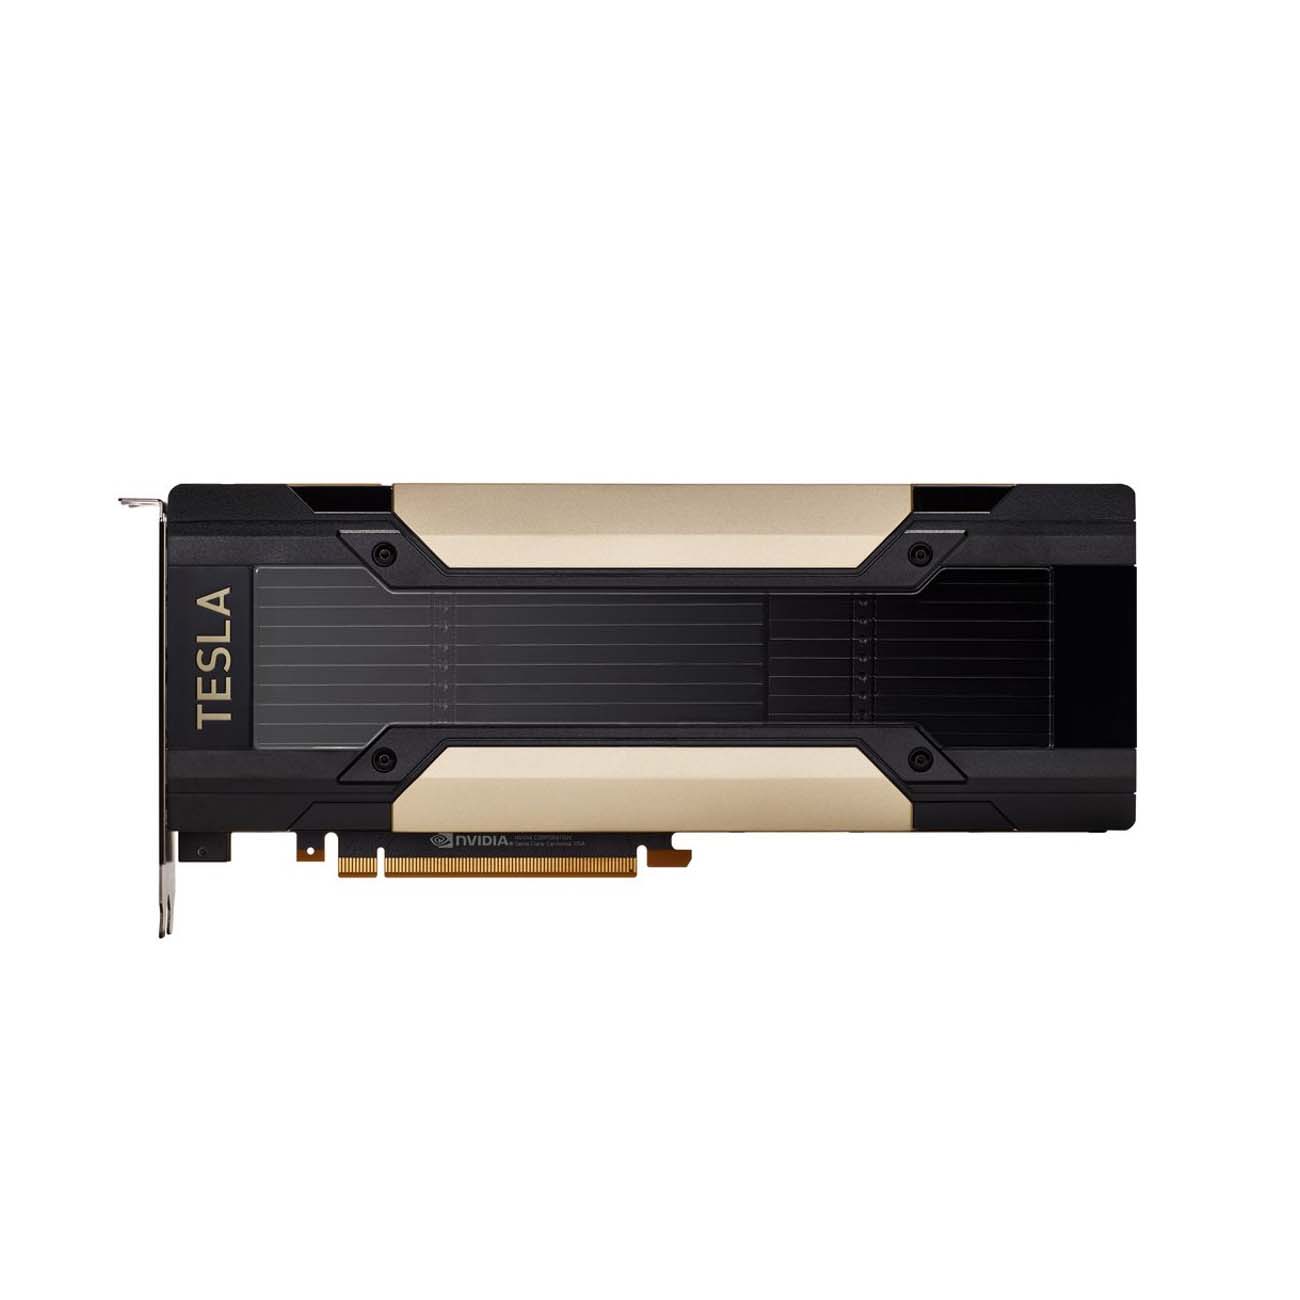 شتاب دهنده محاسباتی Nvidia مدل R6B53C | A100 PCIe 40GB